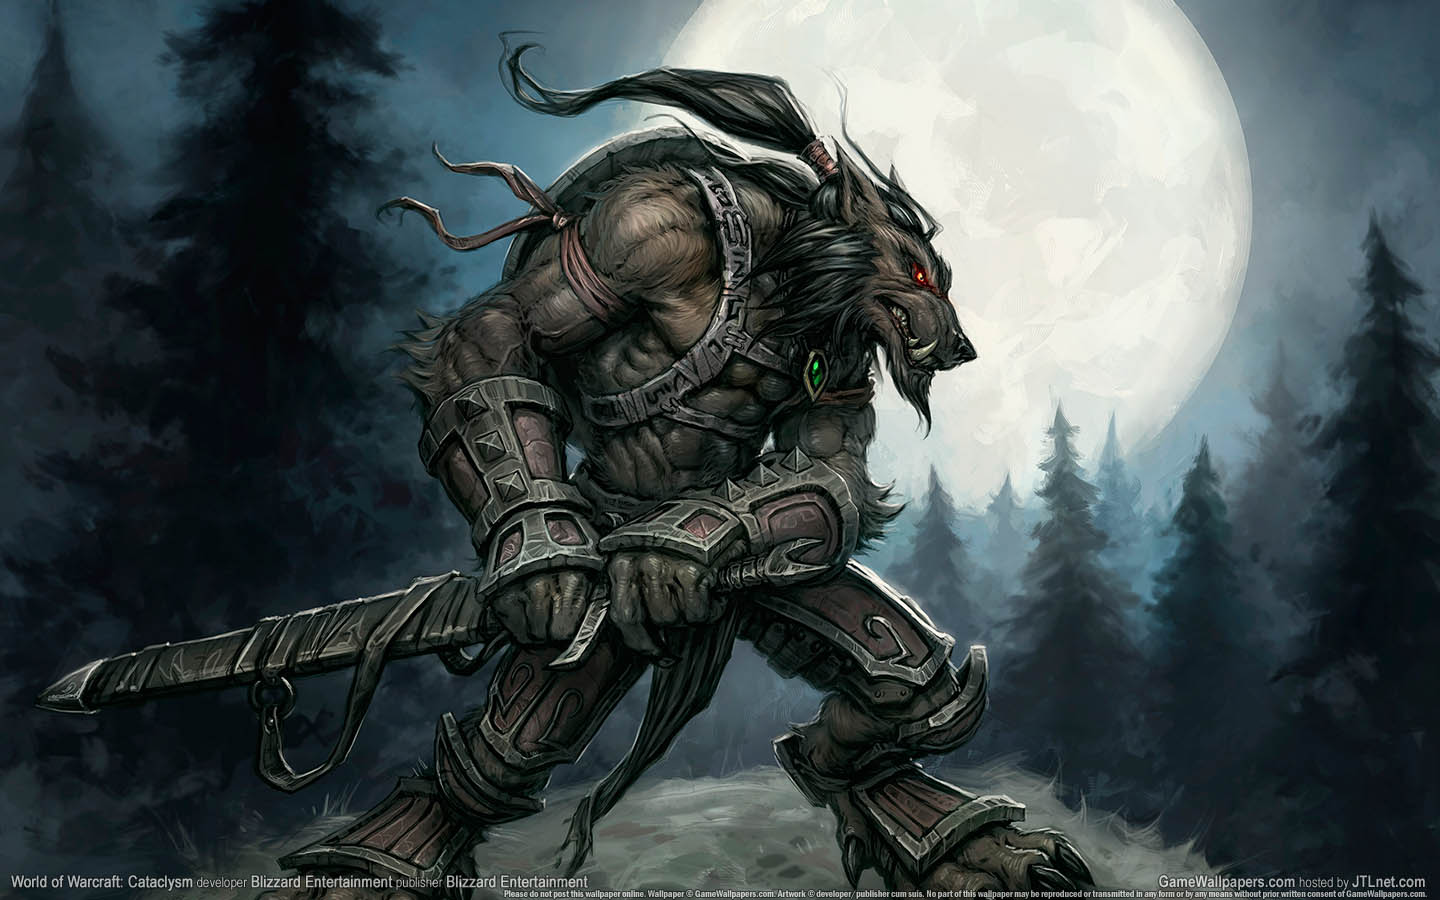 World of Warcraft: Cataclysm fond d'cran 06 1440x900